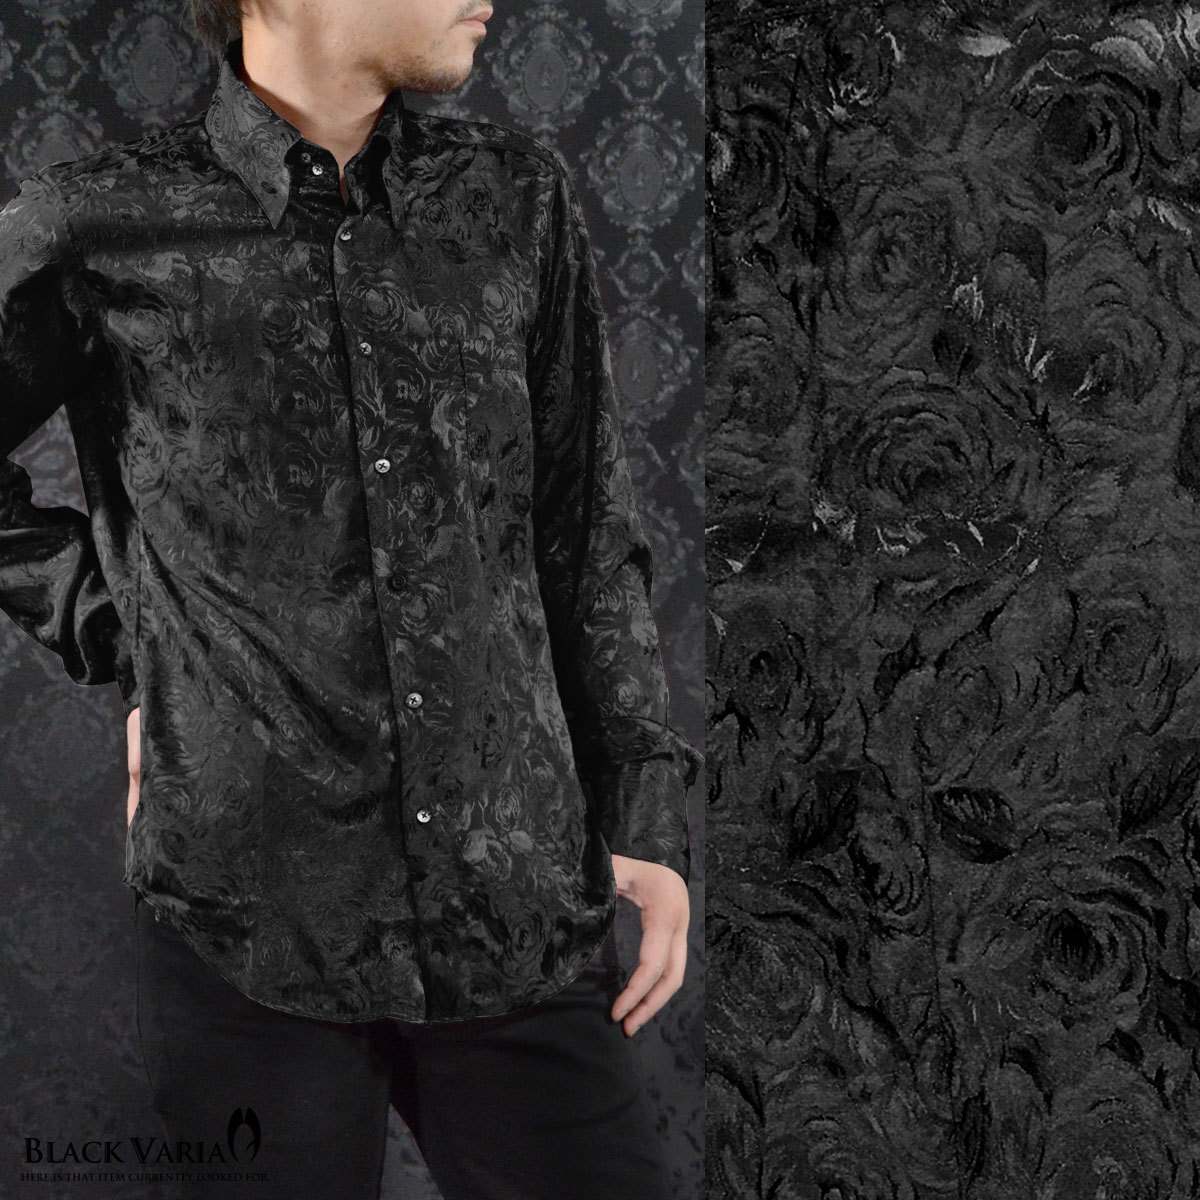 161222-bk BLACK VARIA ドゥエボットーニ 光沢ローズ花柄 織柄 スナップダウン 長袖シャツ メンズ(ブラック黒) S フォーマル_画像2